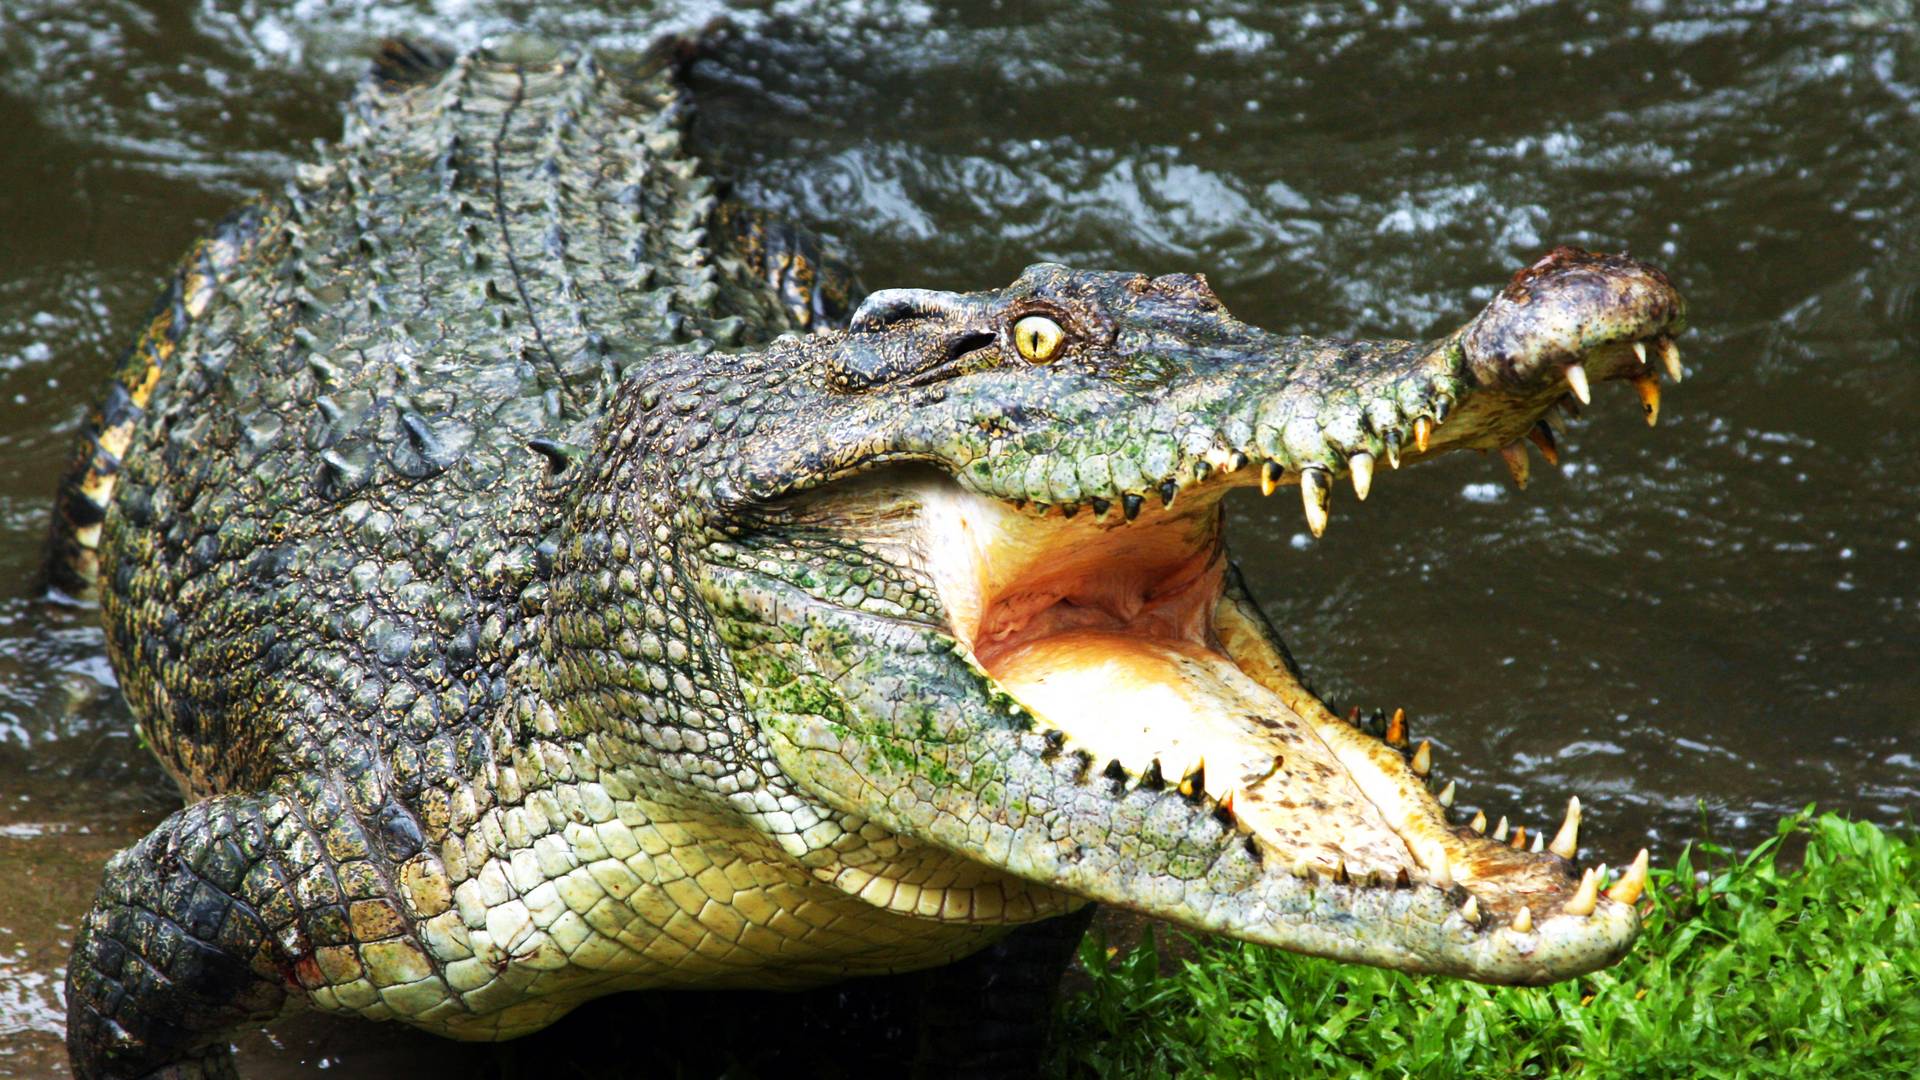 Kis pénisze miatt nem tudott utódot nemzeni ez a krokodil, avagy: kicsi a kroki broki!